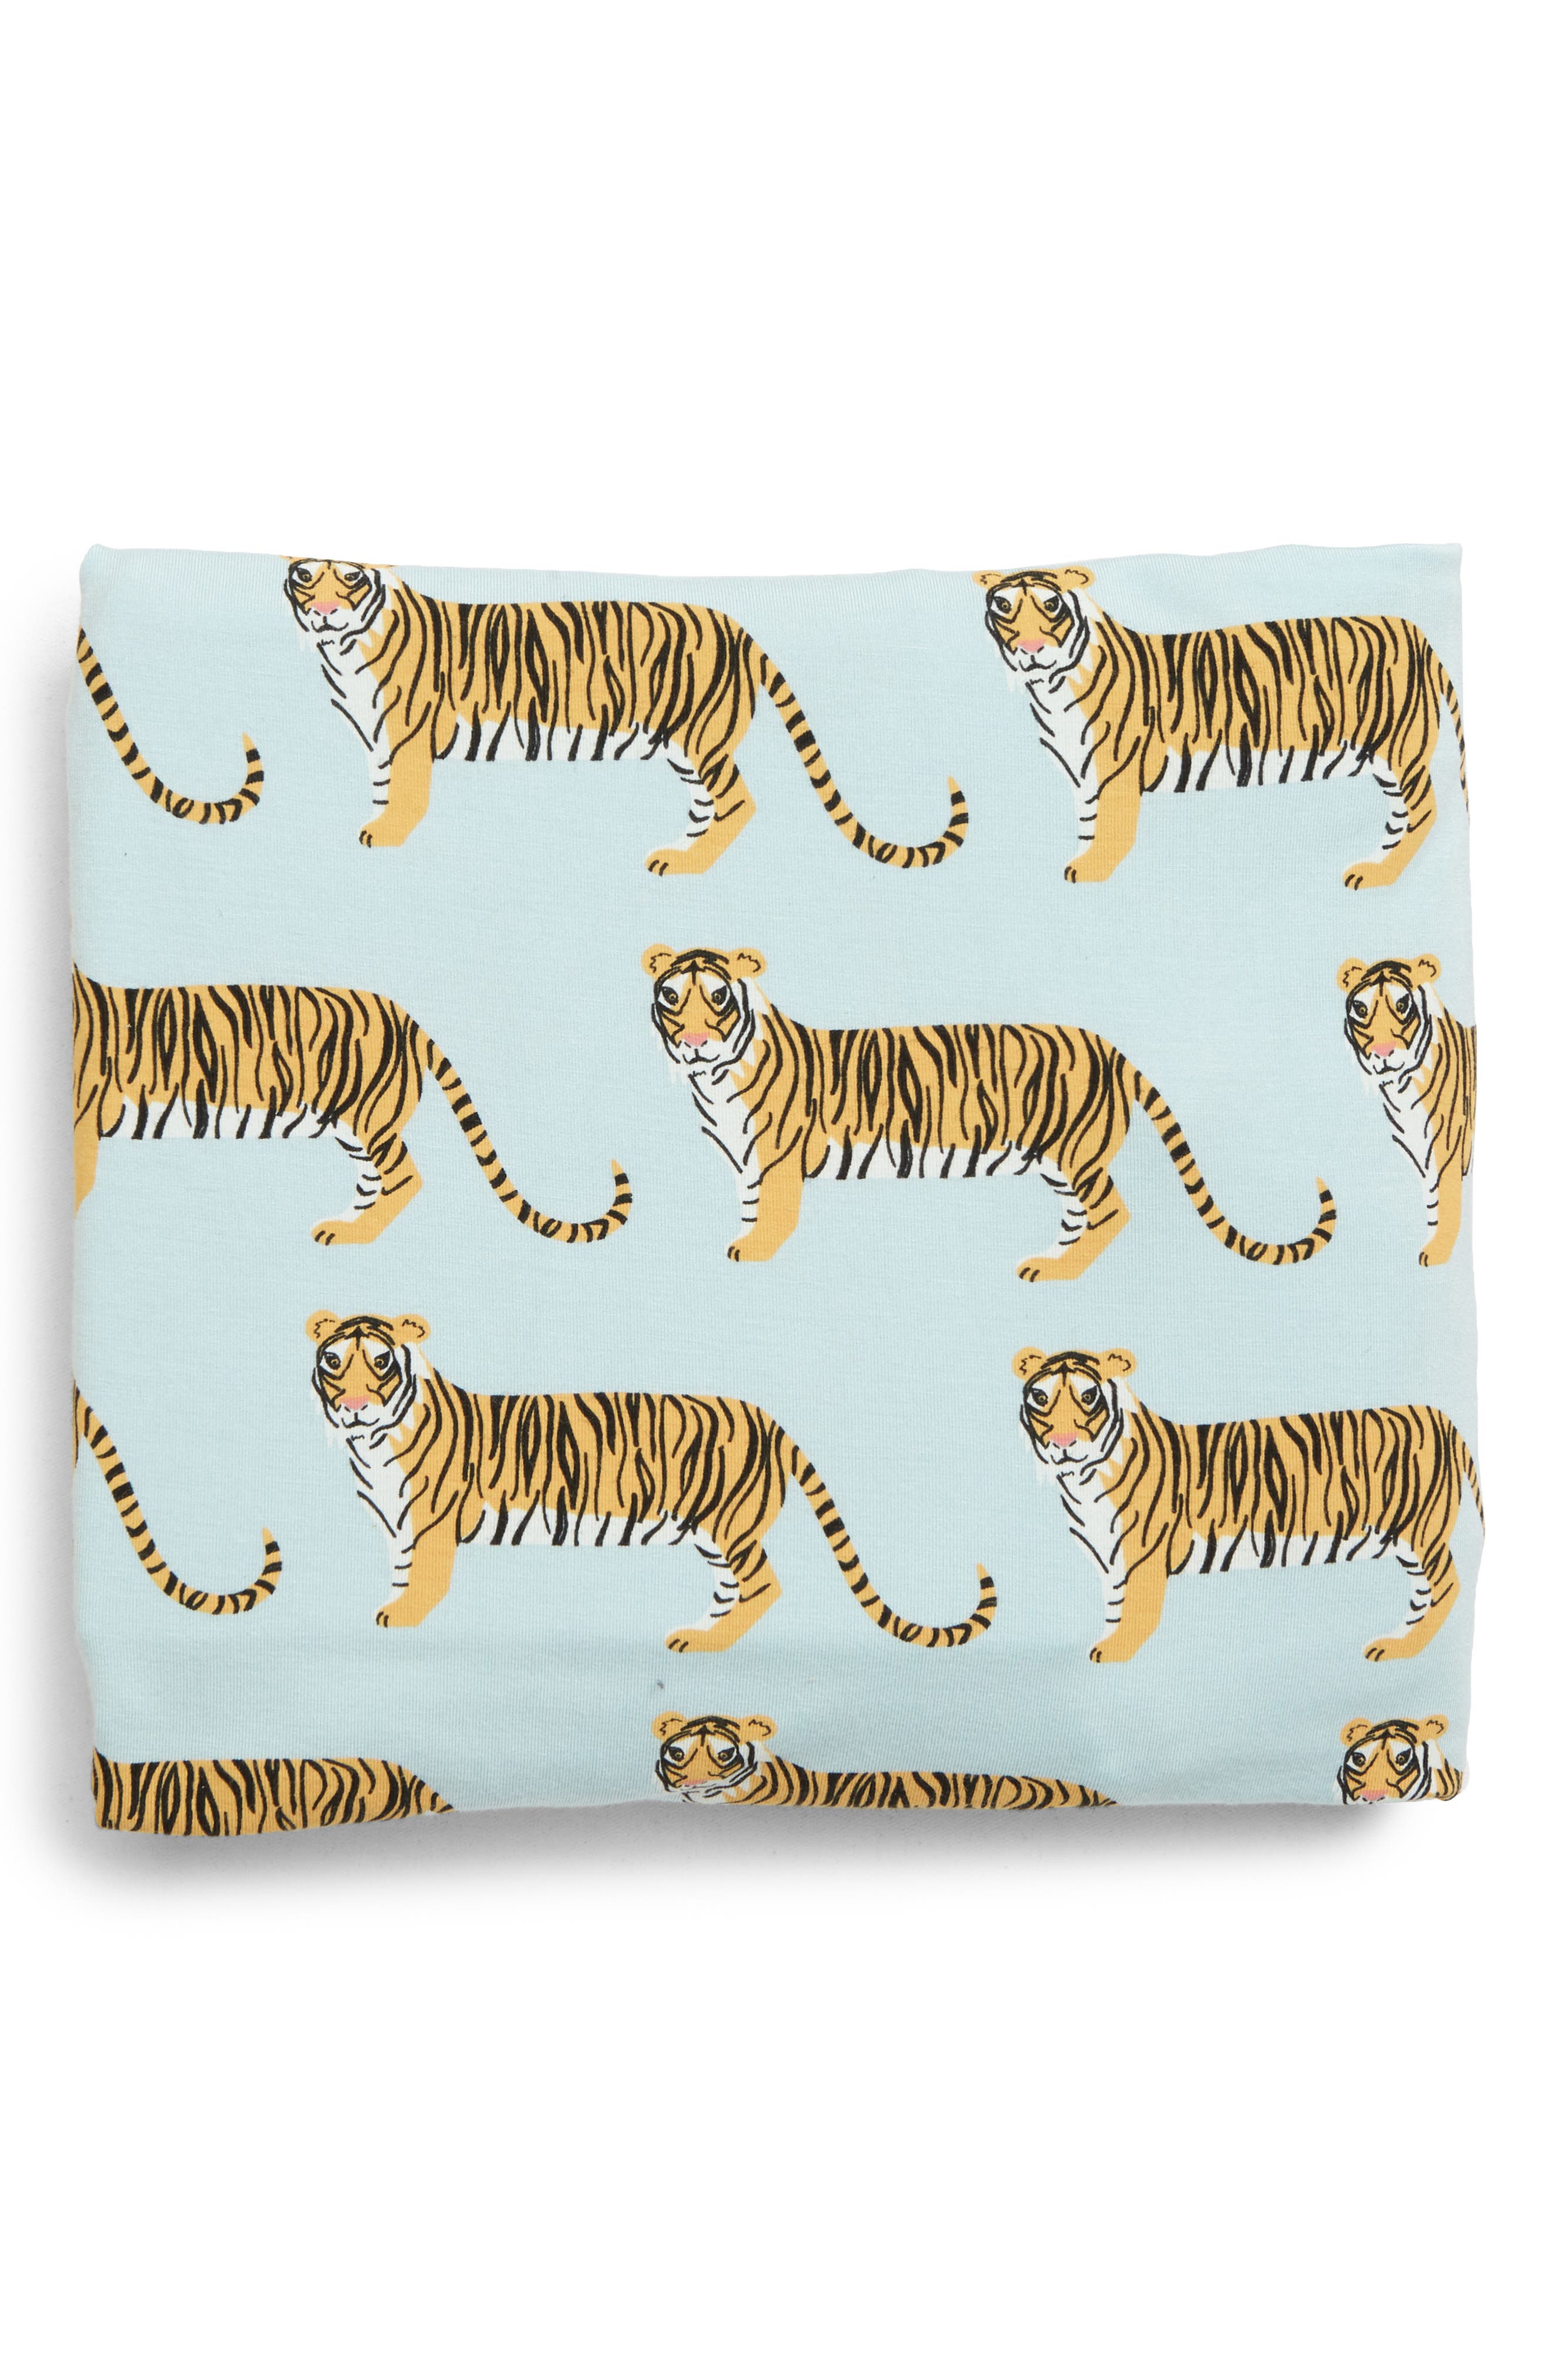 tiger crib sheets